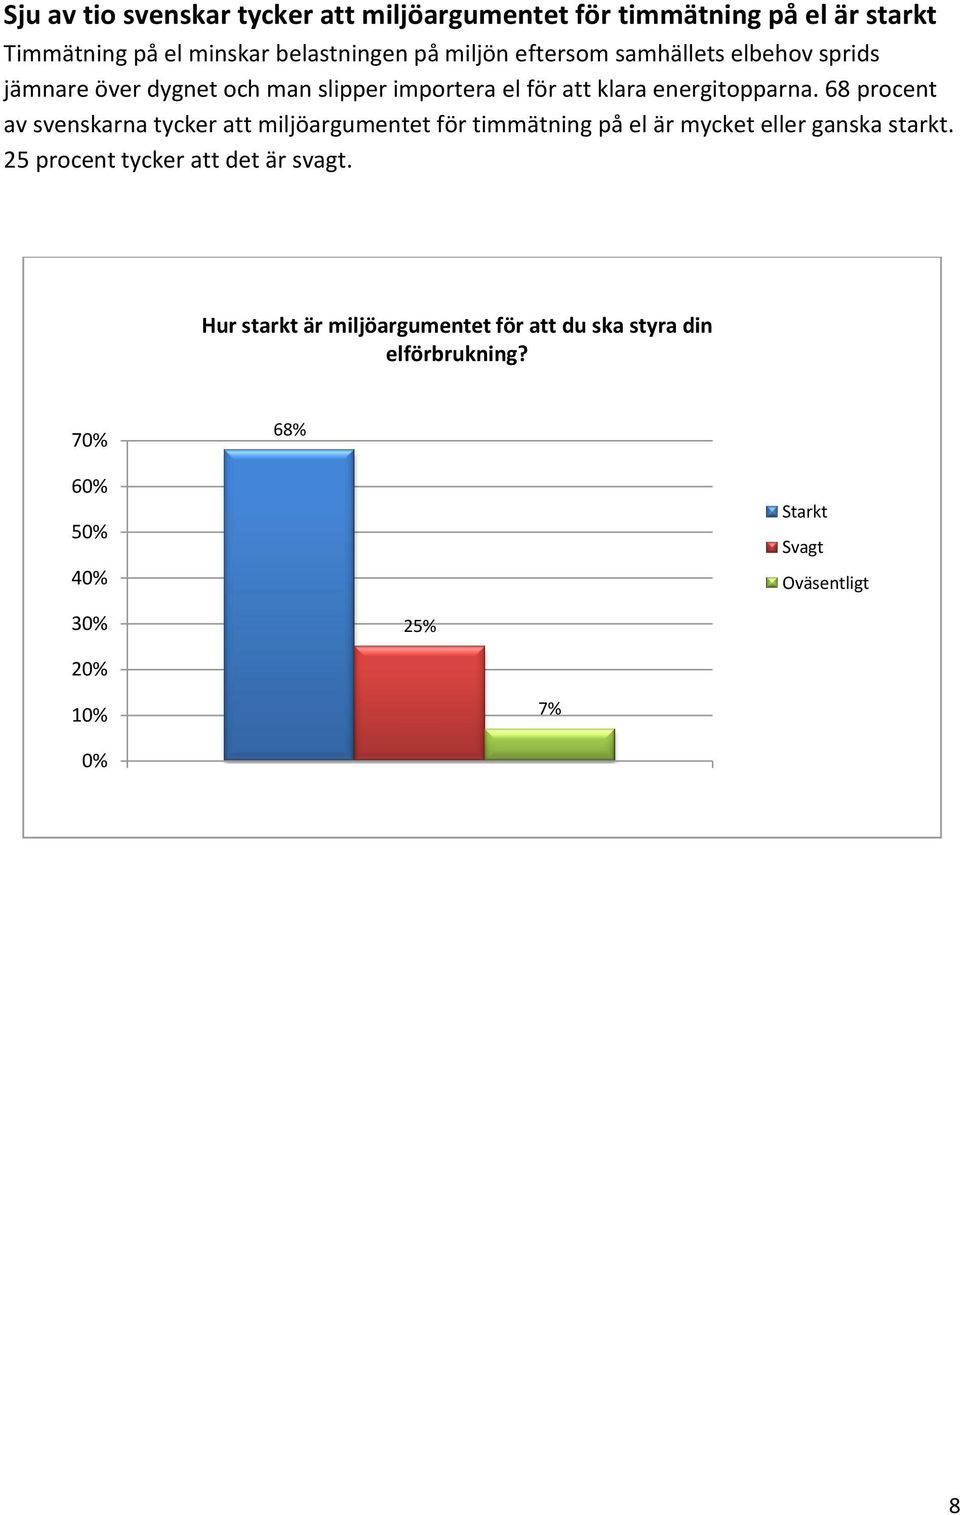 68 procent av svenskarna tycker att miljöargumentet för timmätning på el är mycket eller ganska starkt.